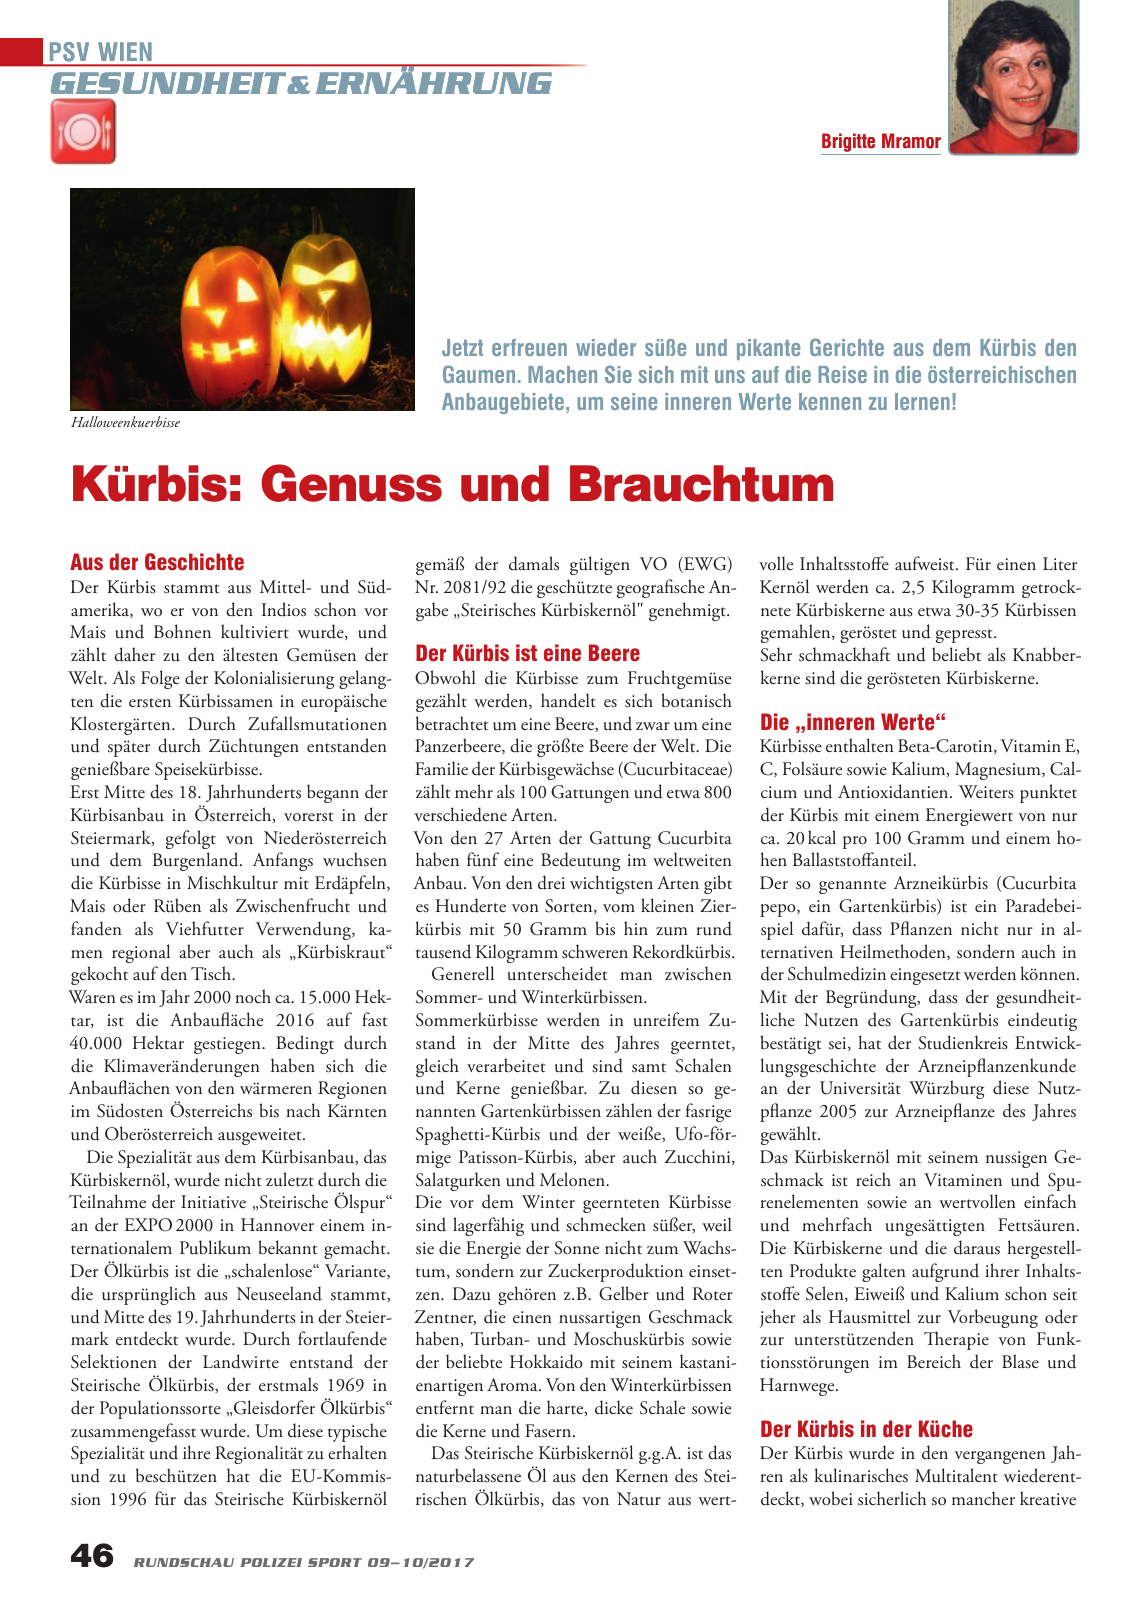 Vorschau Rundschau Polizei Sport 09-10/2017 Seite 46